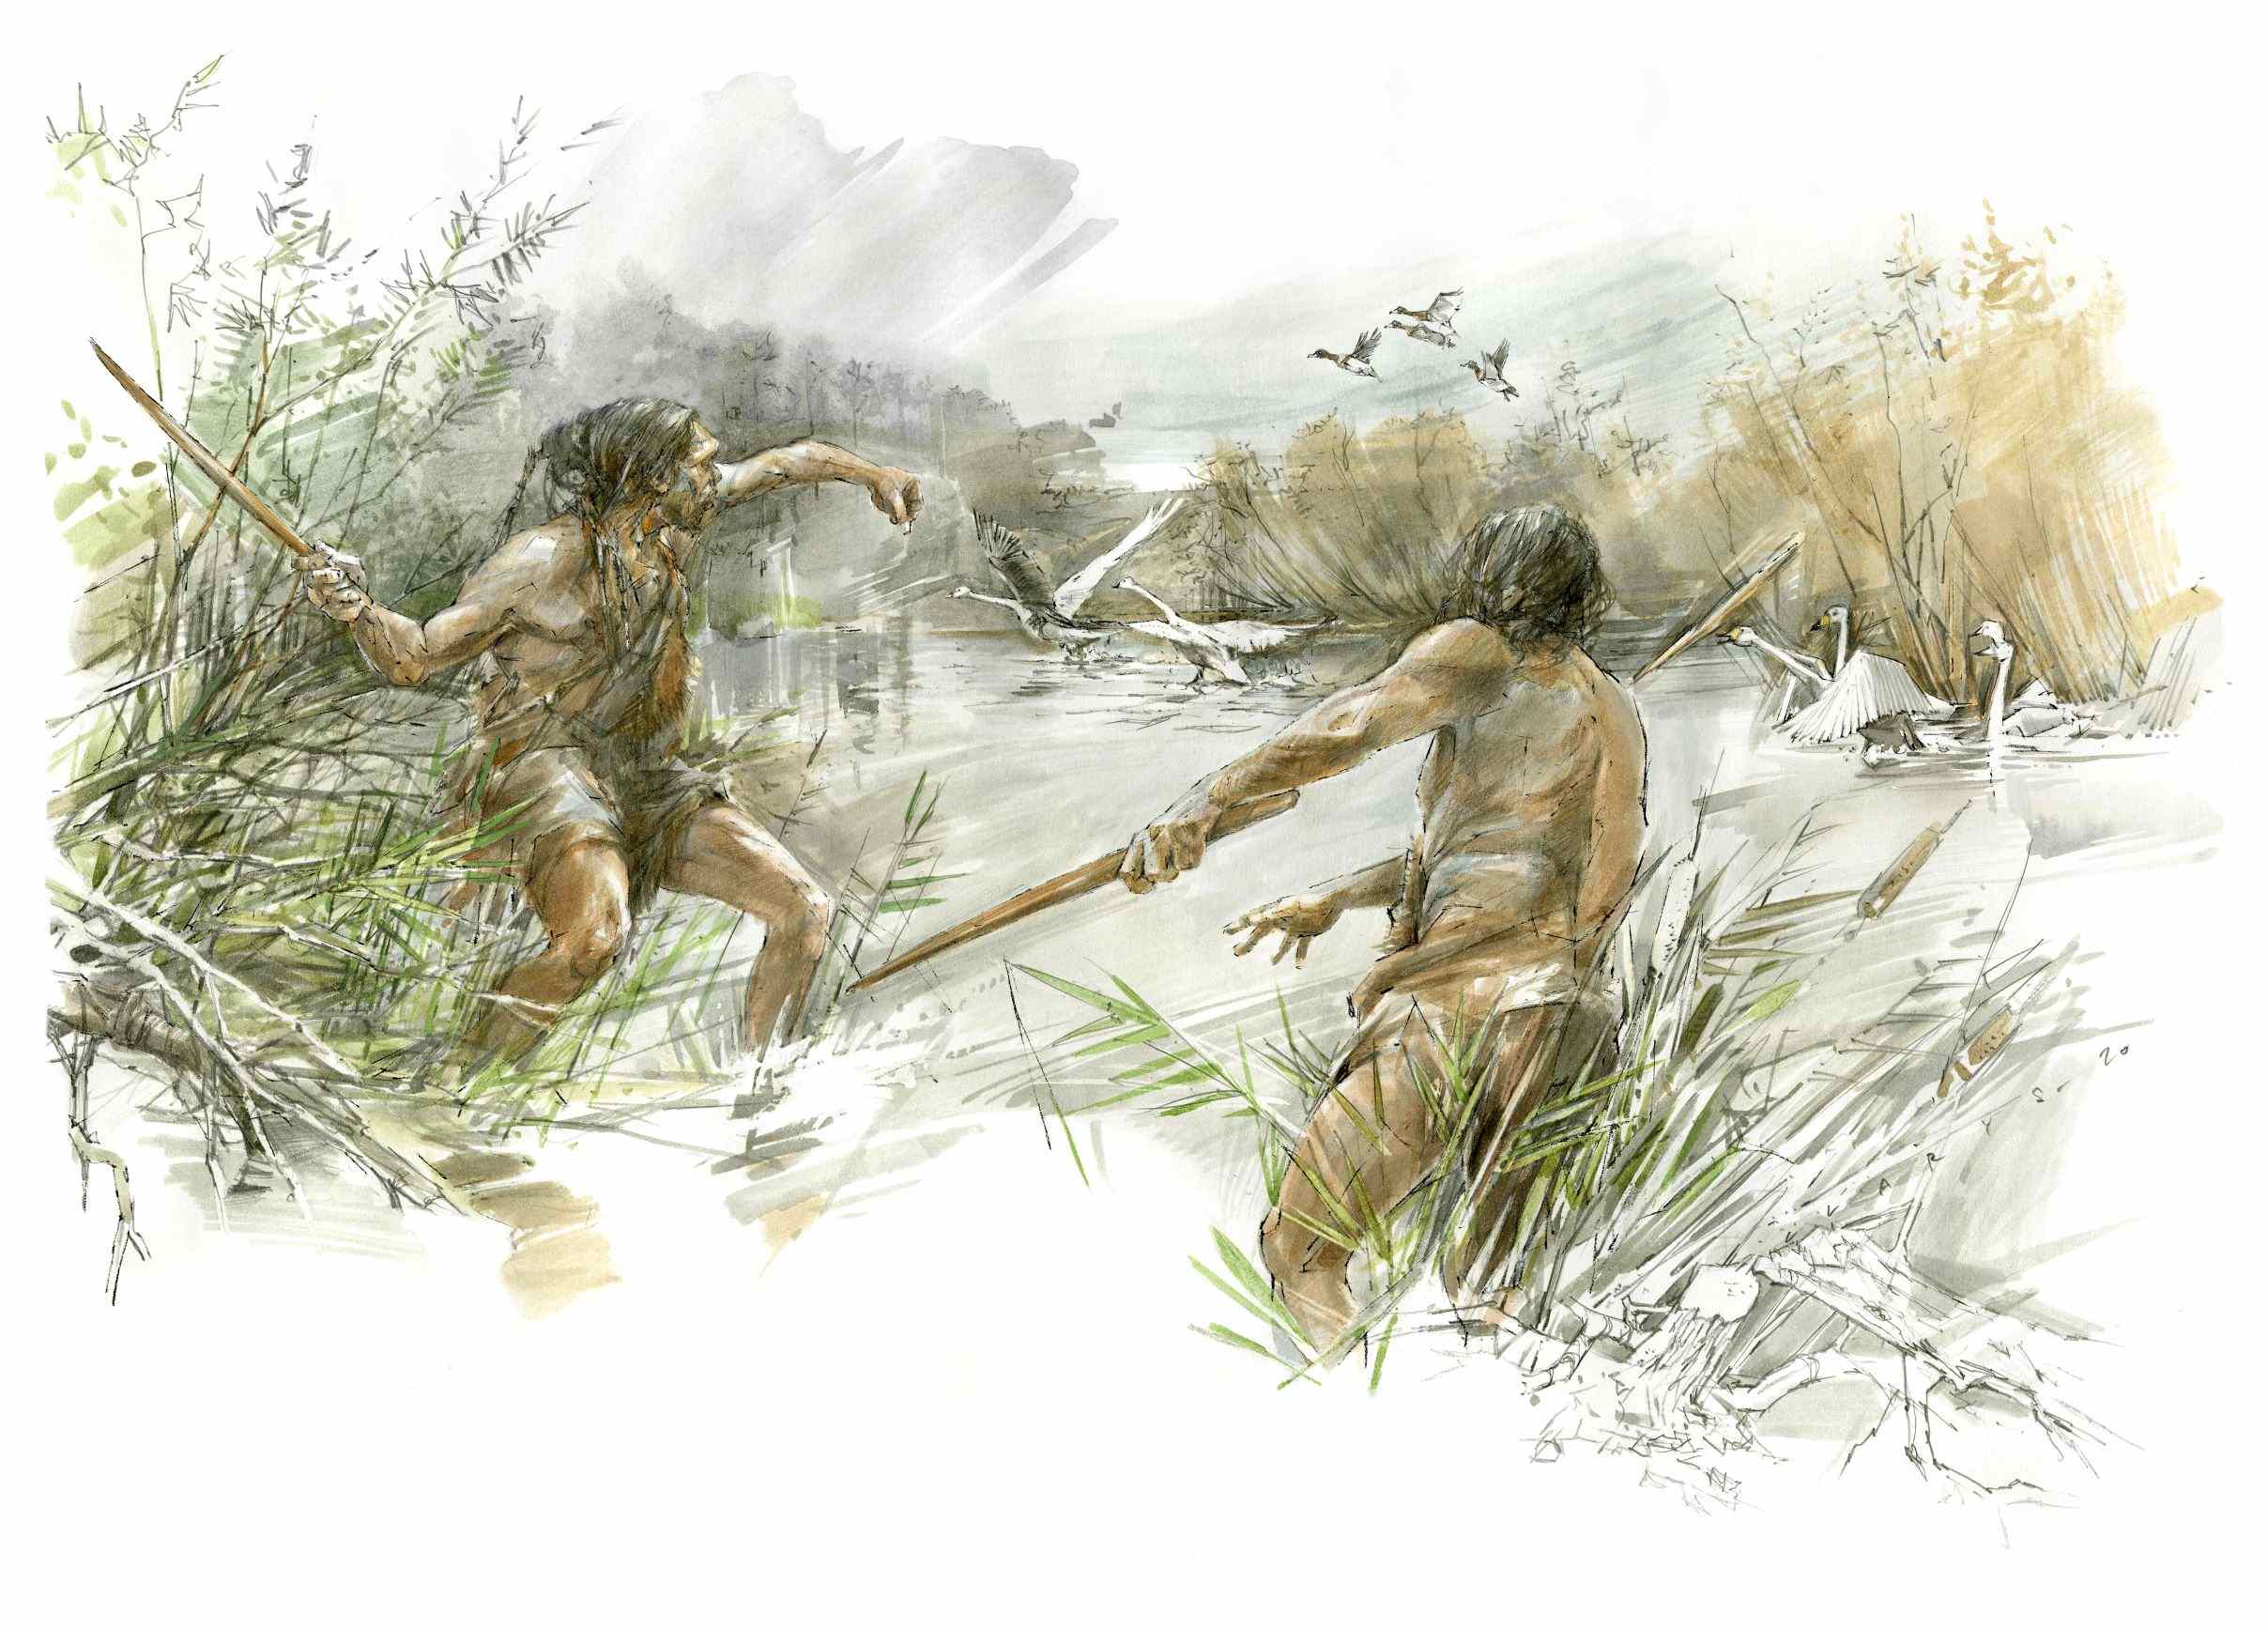 نیزه های 300,000 ساله شونینگن، نجاری پیشرفته ماقبل تاریخ را نشان می دهد 1